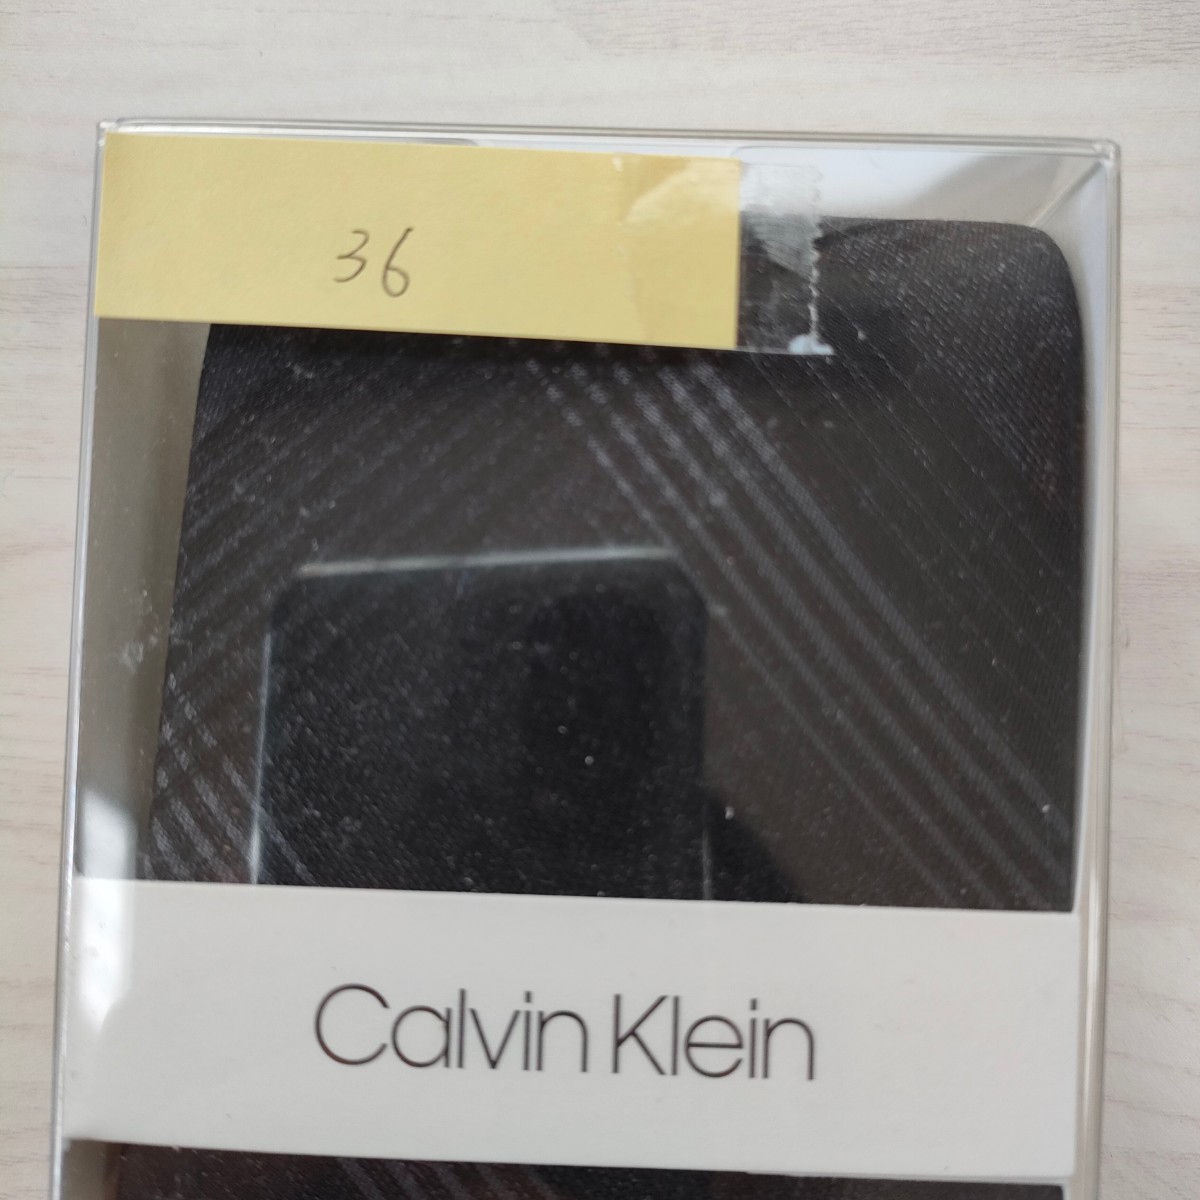  Calvin Klein (Calvin Klein)36 necktie new goods unused box attaching unopened goods accessory box, clear case 